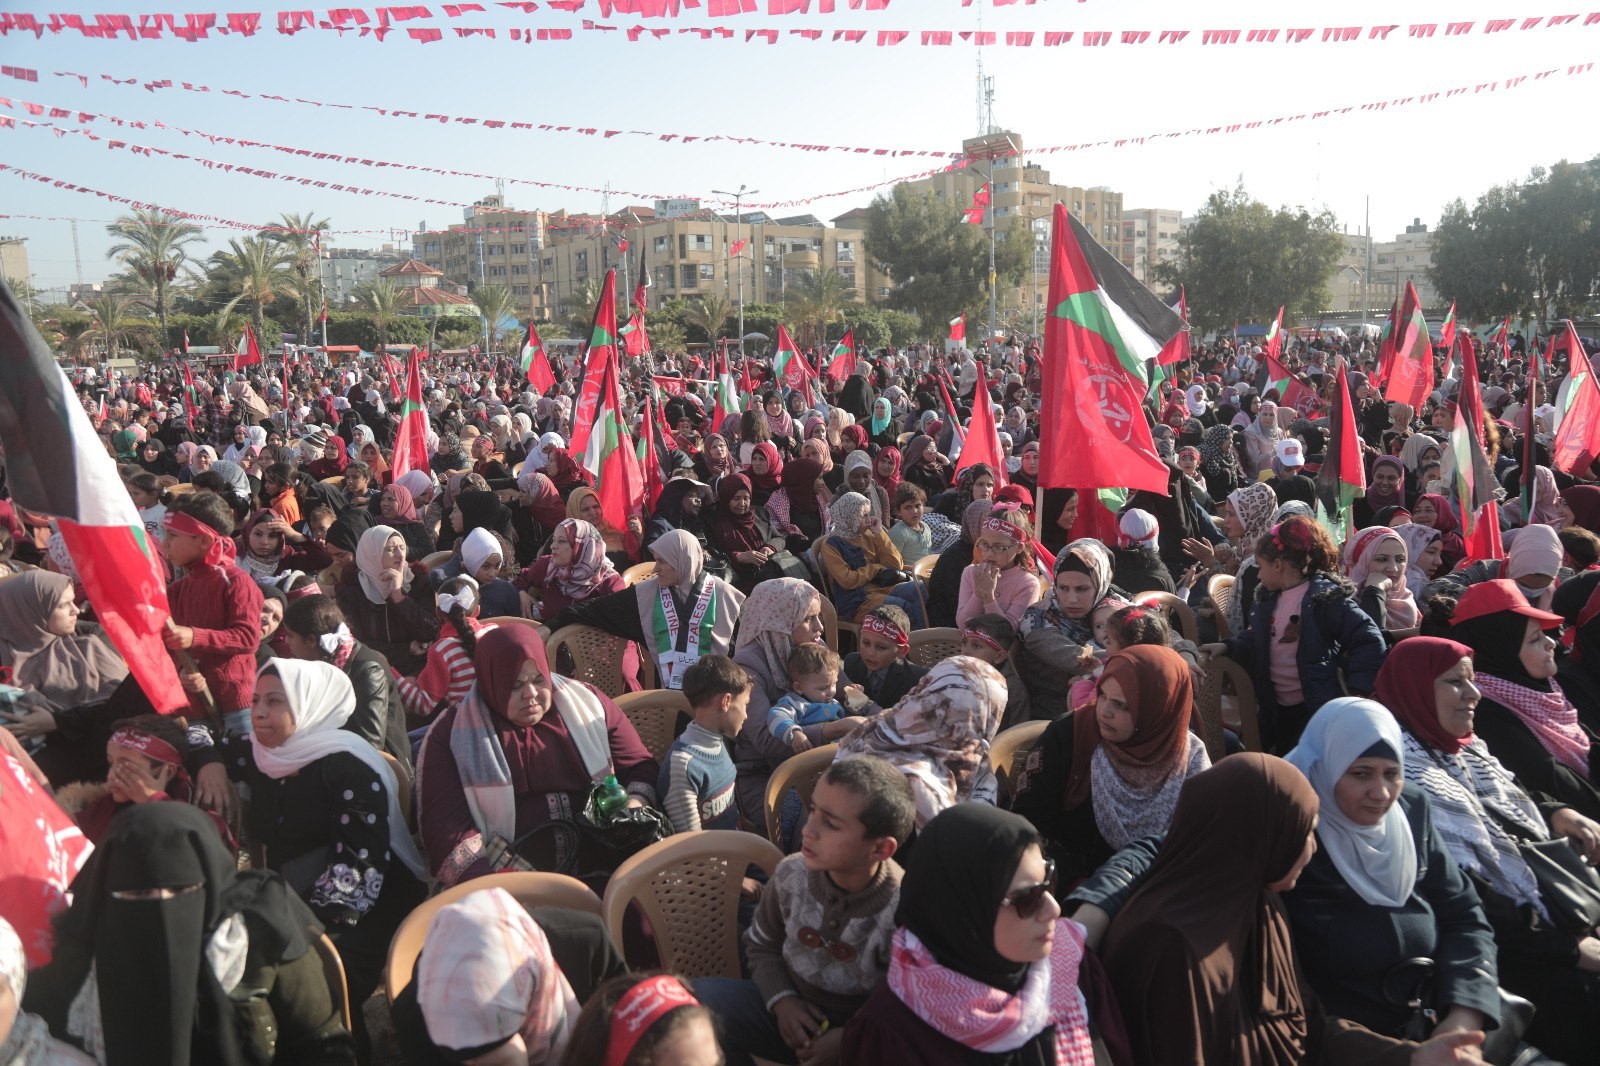 عشرات الآلاف يُشاركون في المهرجان الوطني (انطلاقتنا مقاومة) في ساحة الكتيبة بمدينة غزة لإحياء ذكرى انطلاقة الجبهة الشعبيّة لتحرير فلسطين الـ55. 11.jpg